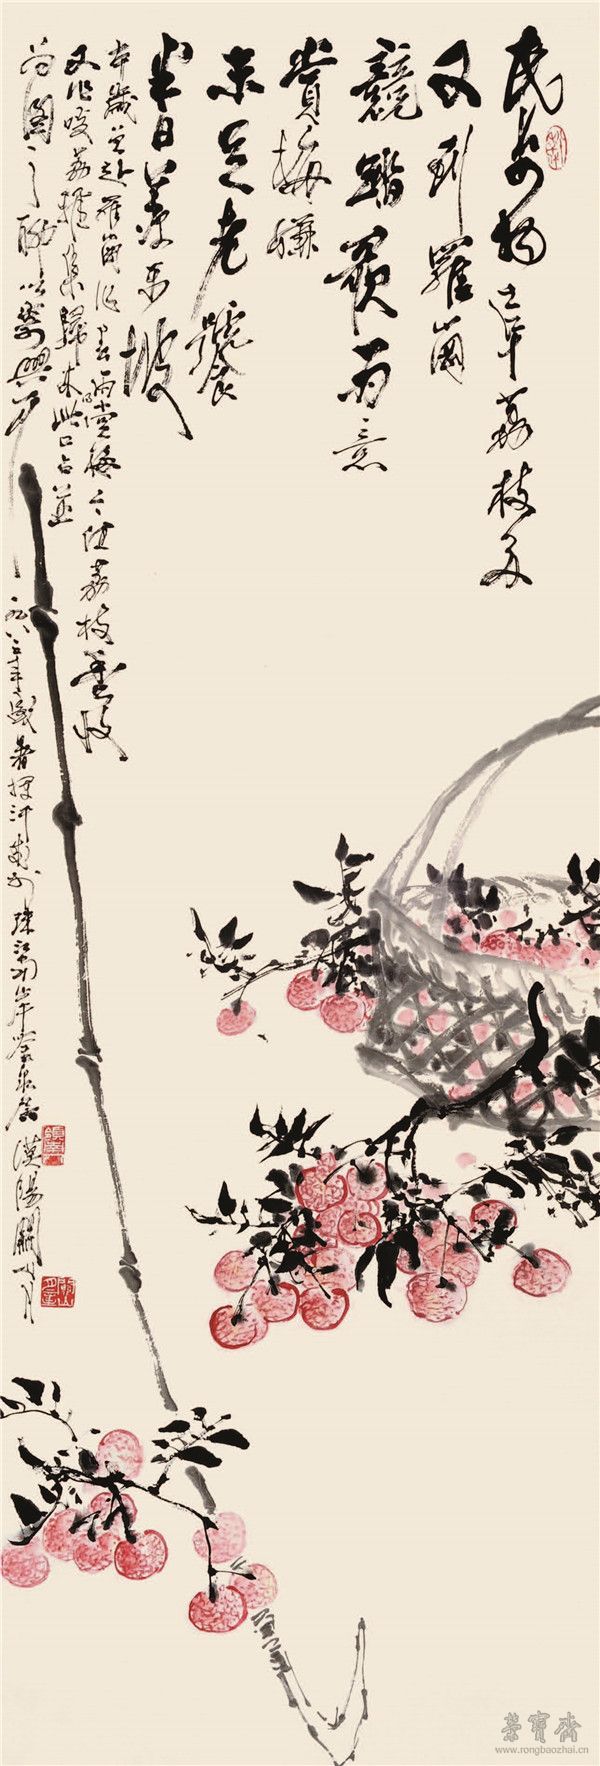 关山月 丹荔图 135.5cm×45cm 1983 年 广州艺术博物院藏